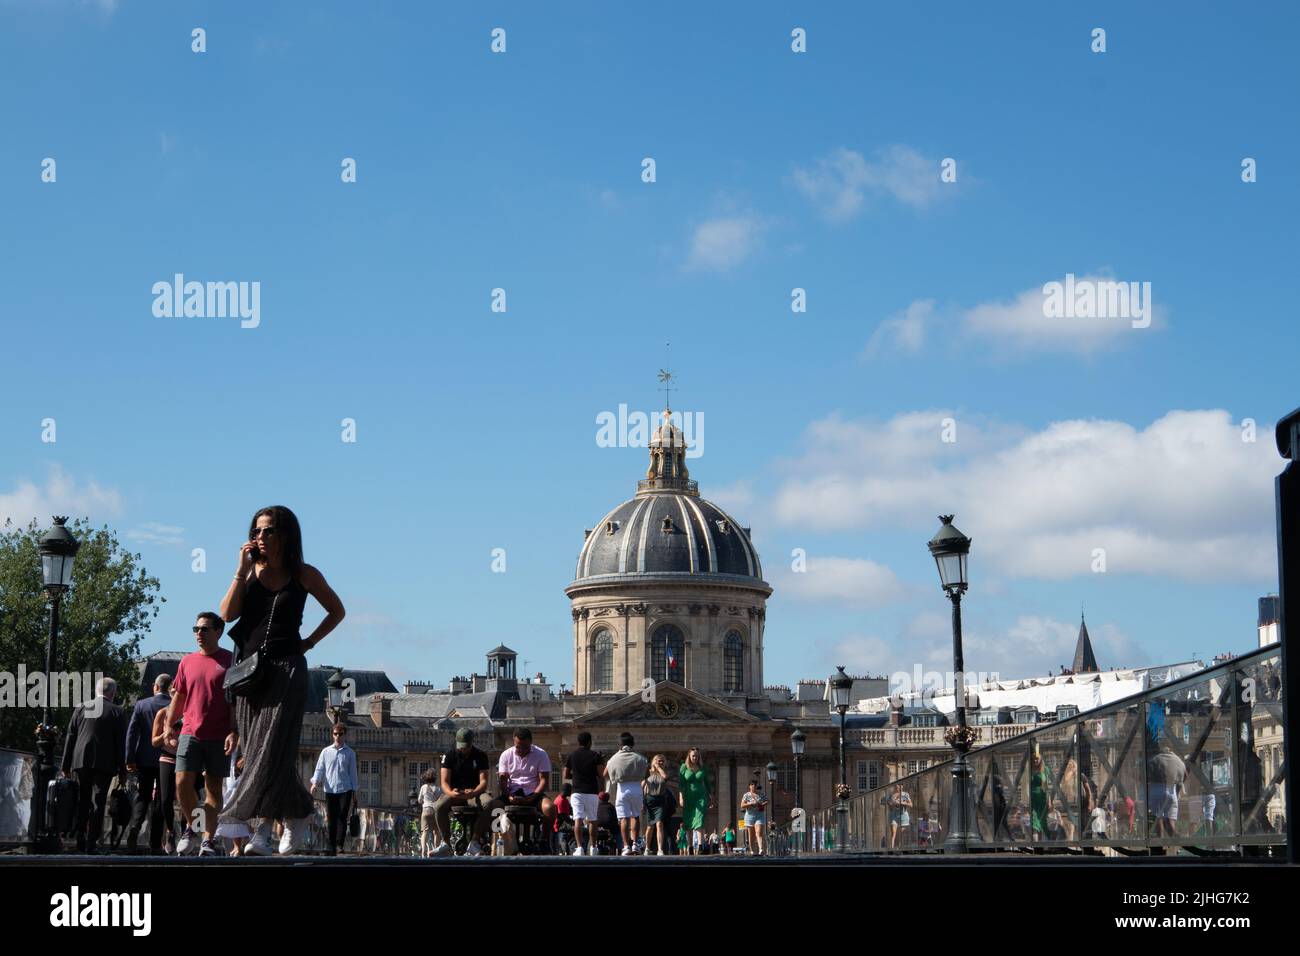 Menschen, die über die Pont des Arts oder die Passerelle des Arts laufen eine Fußgängerbrücke in Paris, die von der niedrigen Ebene mit der Kuppel des Institut de France aufgenommen wurde Stockfoto